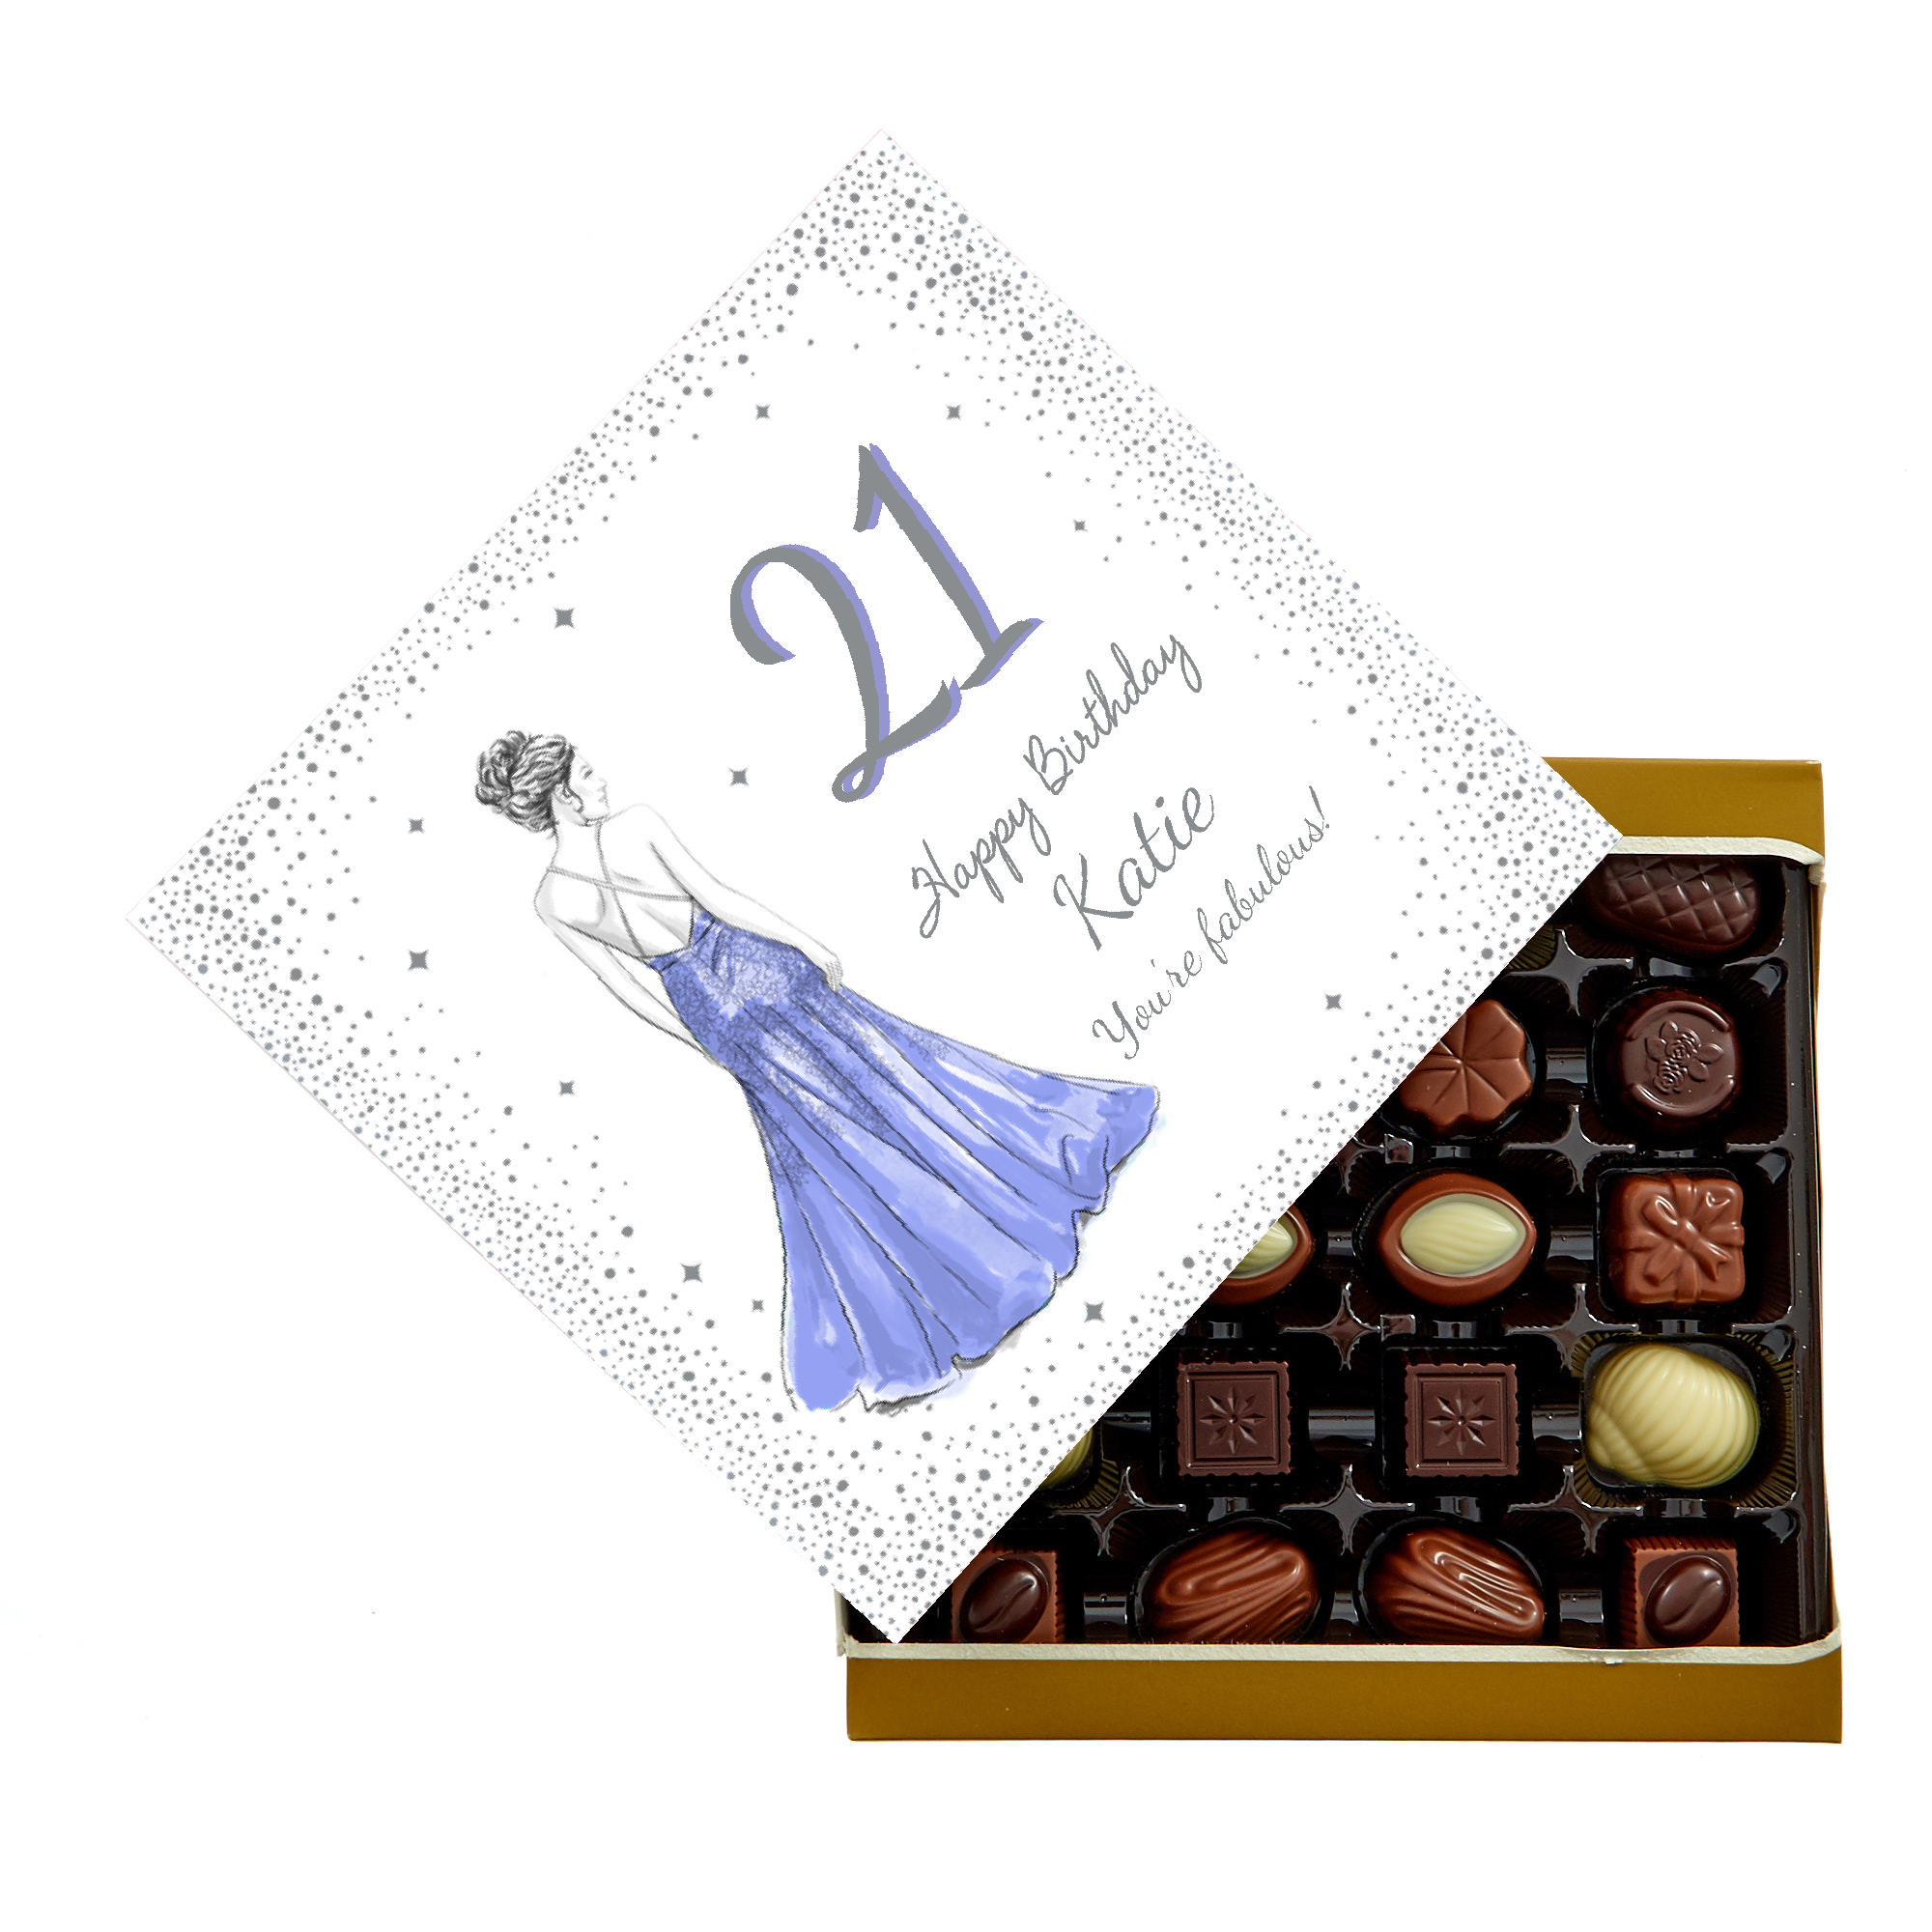 Personalised Belgian Chocolates - Glam Lady, Editable Age